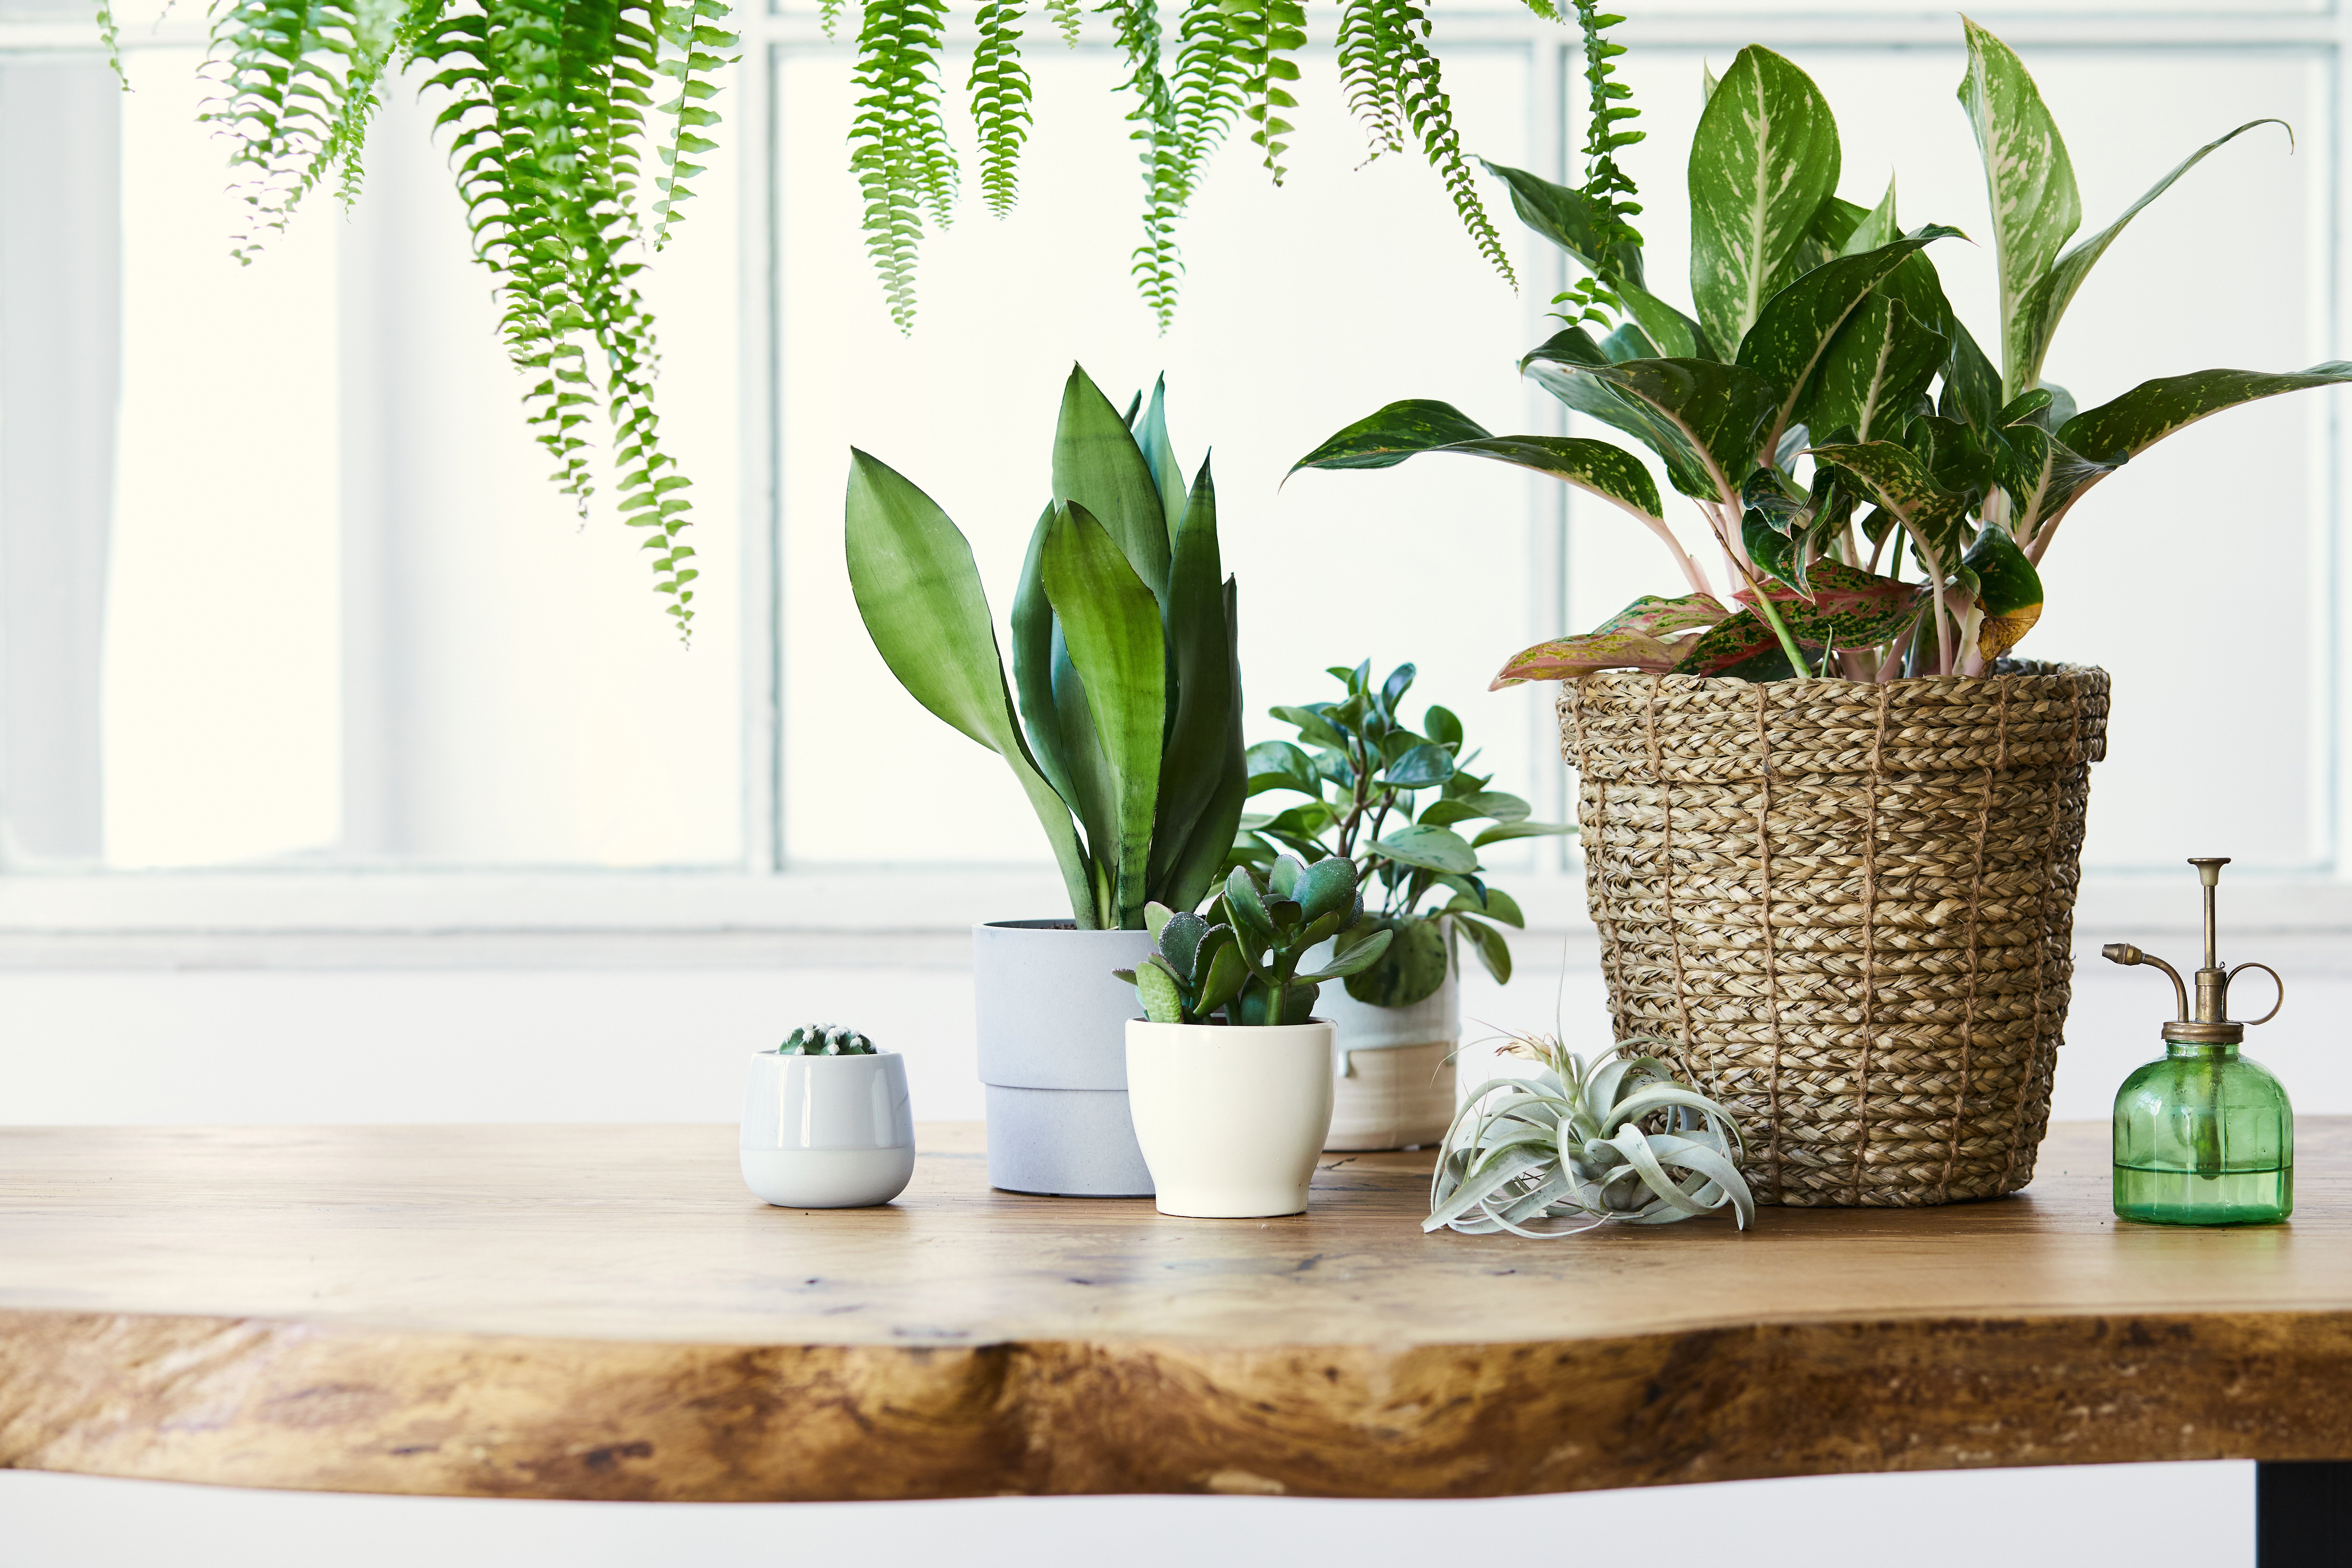 Com essas dicas, a decoração do seu lar fica mais harmoniosa e leve. Além disso, as plantas podem oferecer benefícios como purificação do ar e prevenção de crises alérgicas